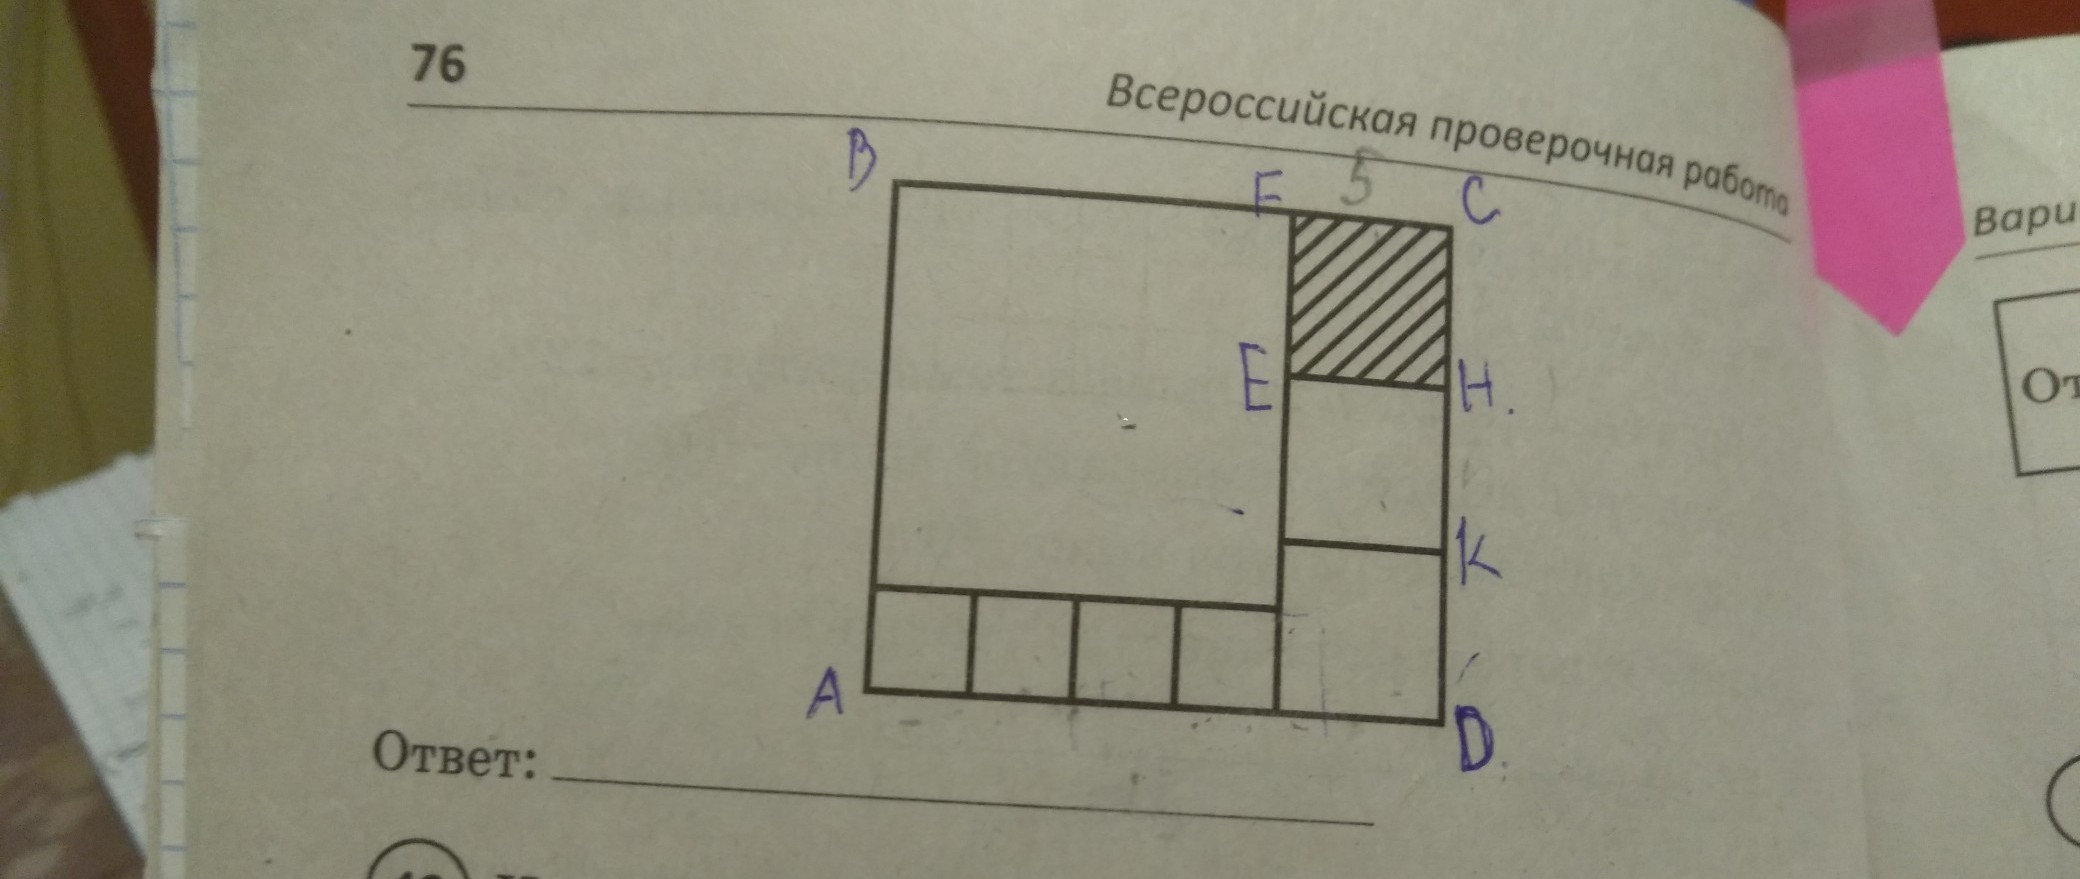 Прямоугольник состоит из 3 прямоугольников. Составление прямоугольников из квадратов. Прямоугольник сосиавлен из КВА. Прямоугольник состоит из 7 квадратов. Прямоугольник из 12 квадратов.